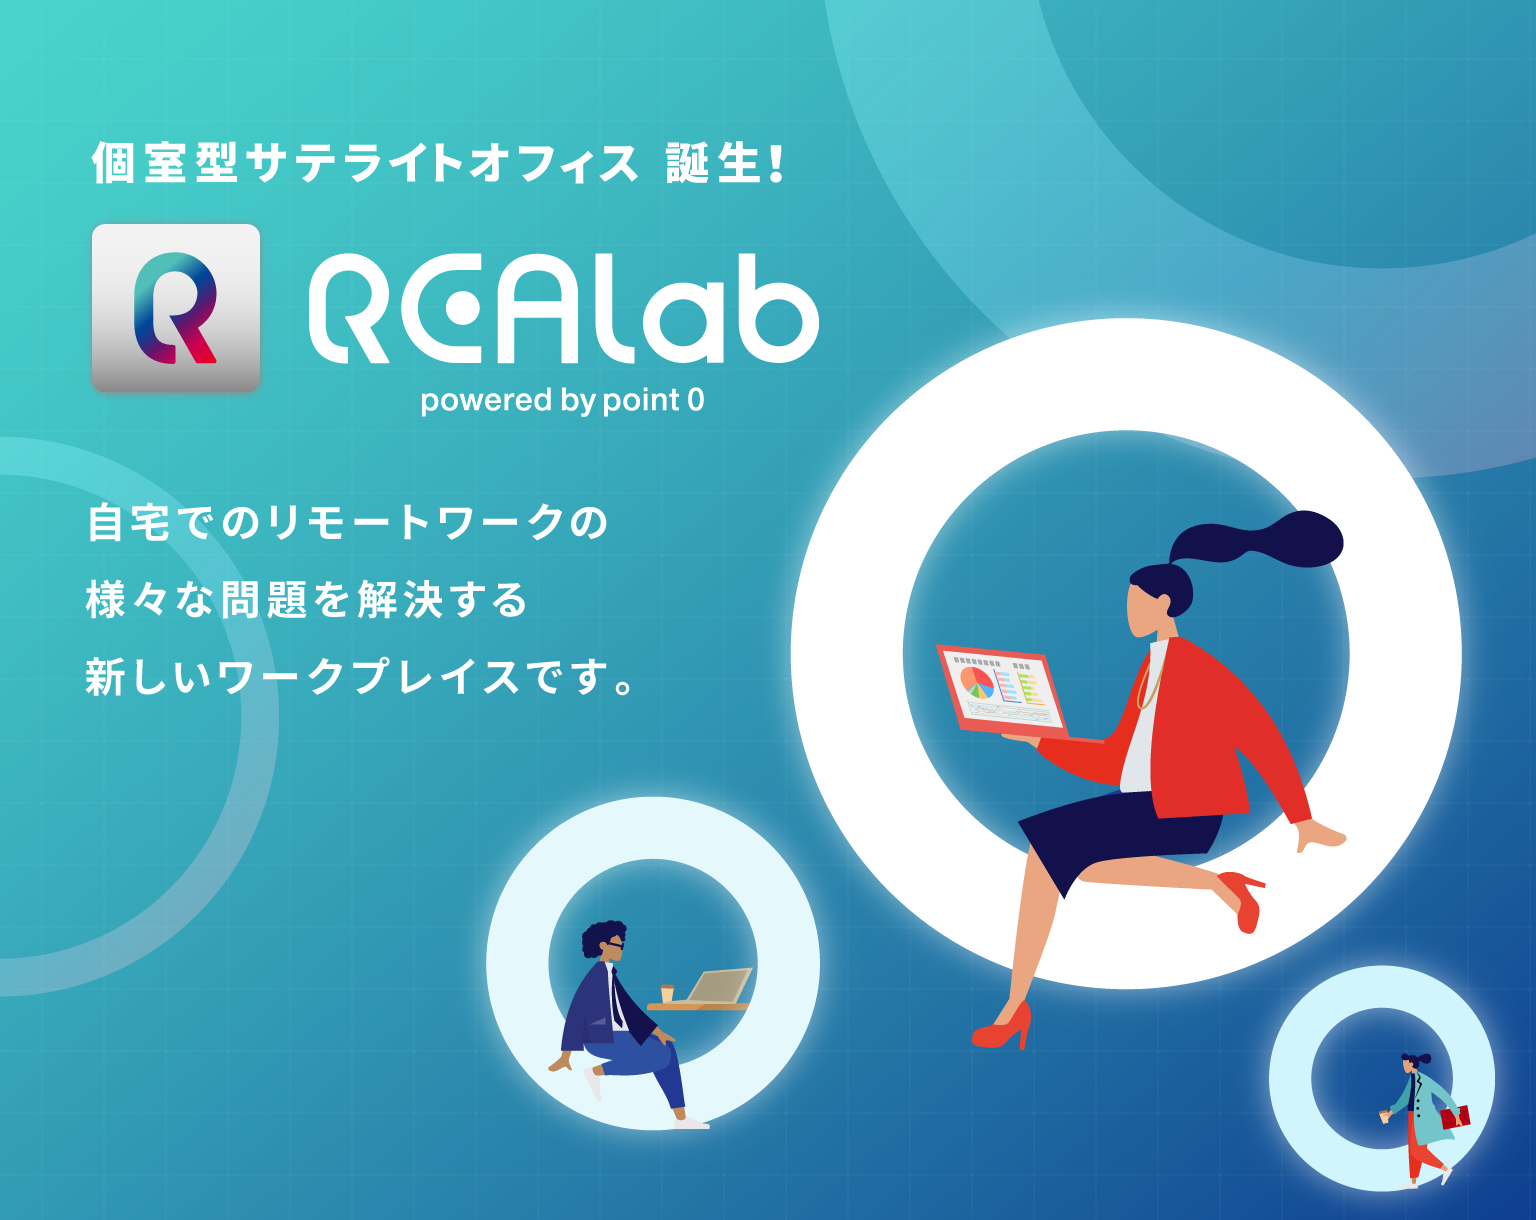 REALab［ リアラボ ］リモートワーク時代に最適化した先進のパーソナルオフィス REALab［ リアラボ ］は、自宅でのリモートワークの様々な問題を解決する、新しいワークプレイスです。